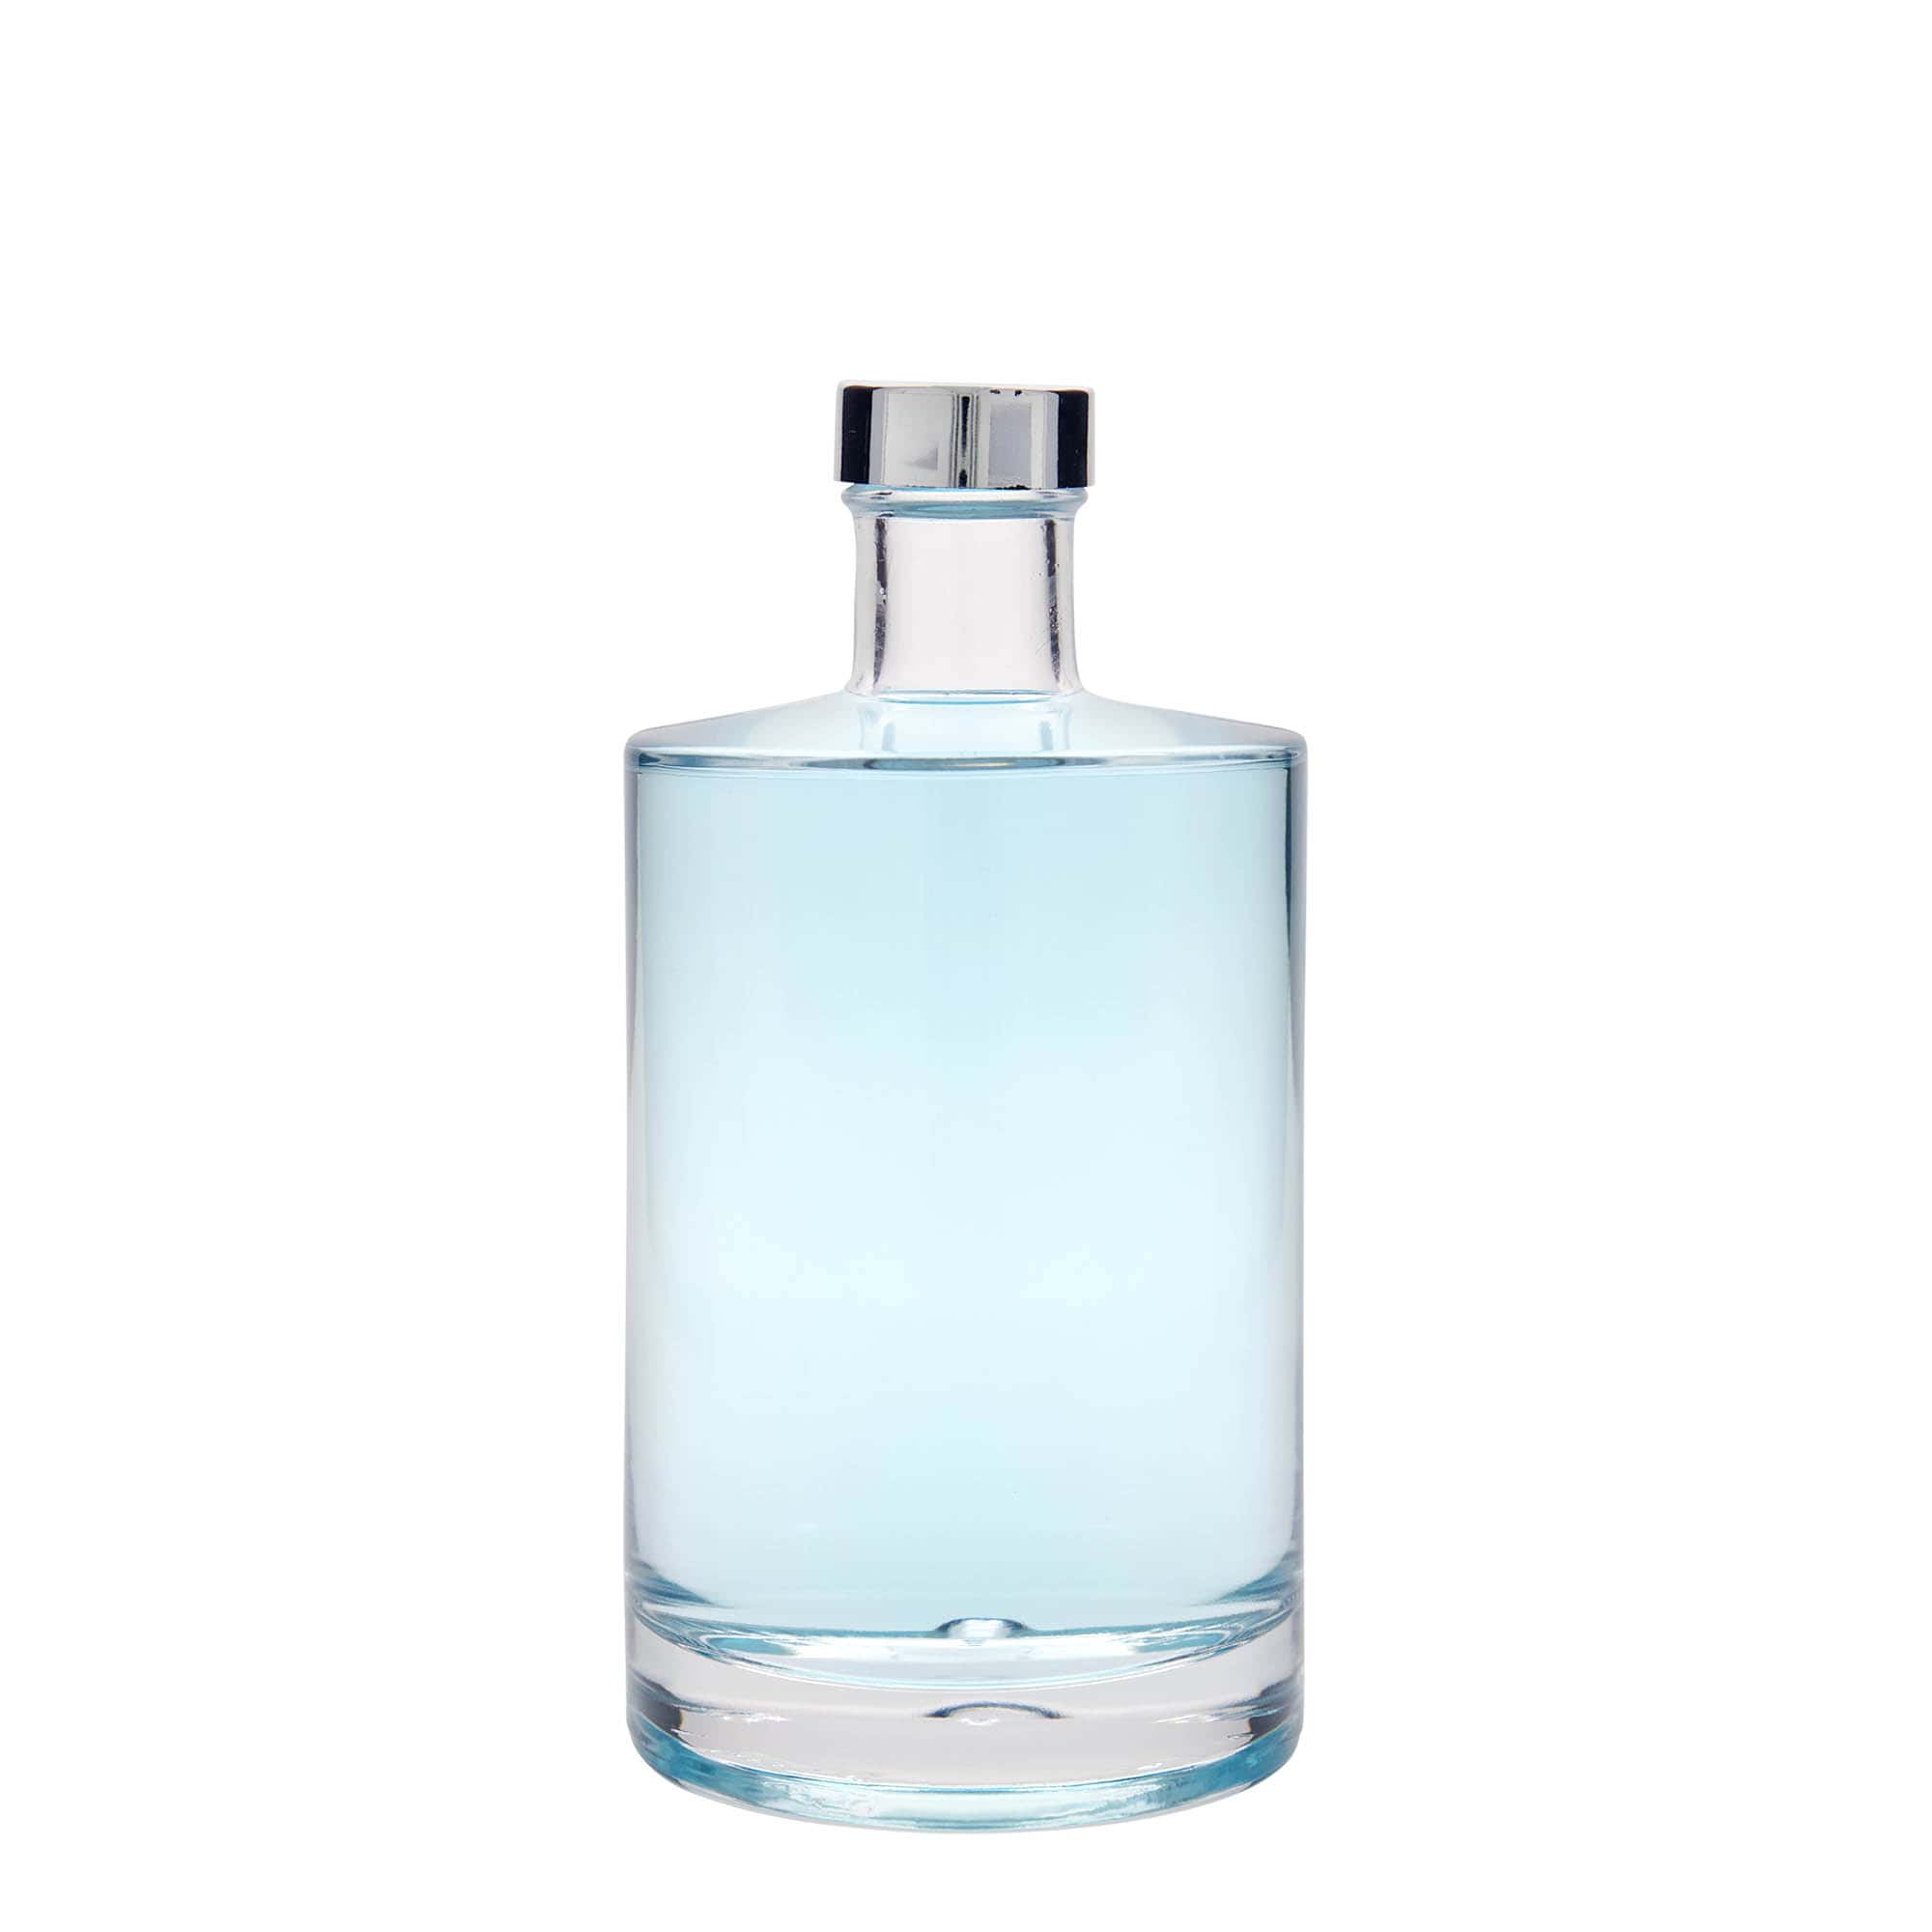 700 ml glass bottle 'Aventura', closure: GPI 33